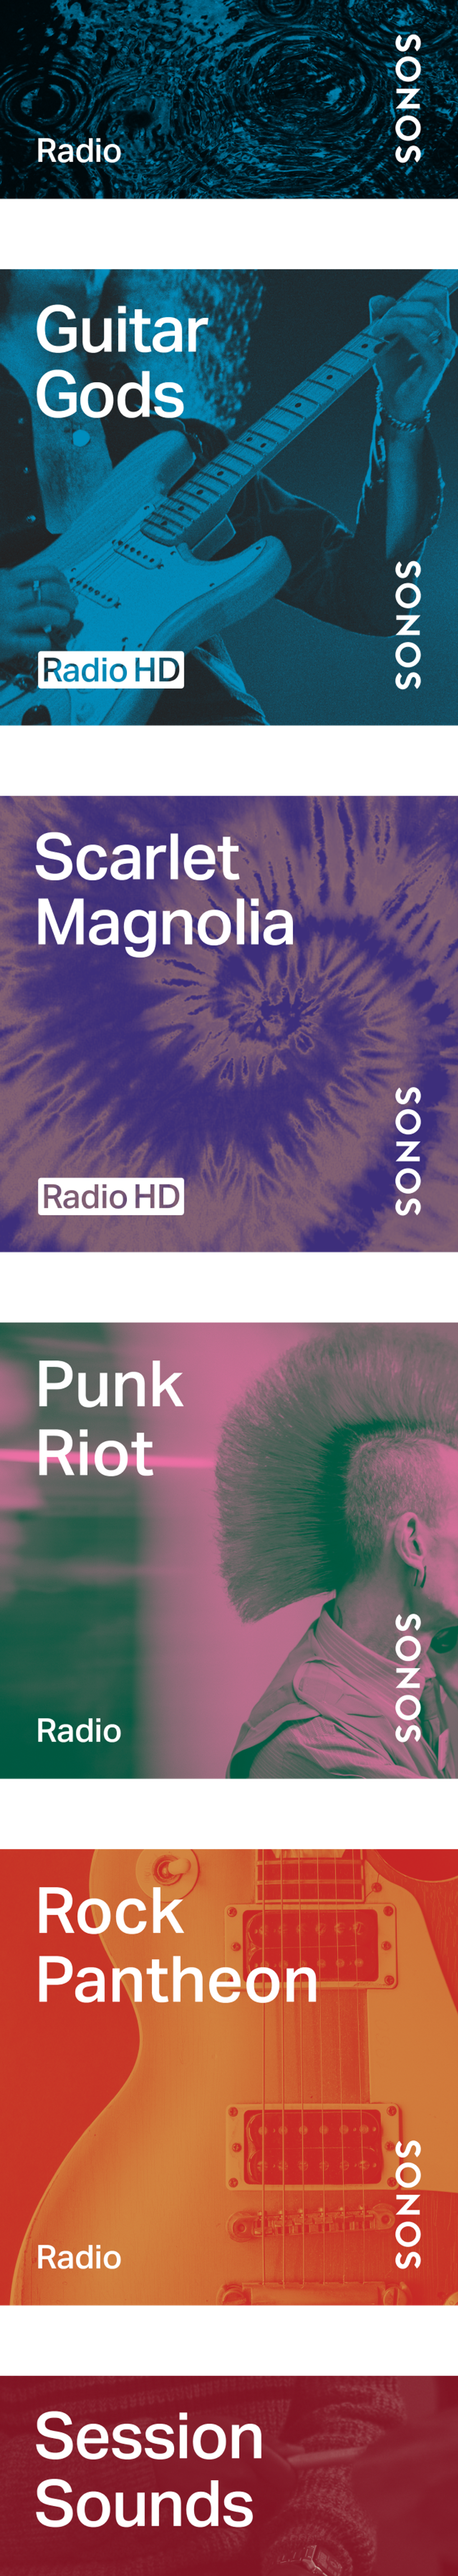 Stationer på Sonos Radio